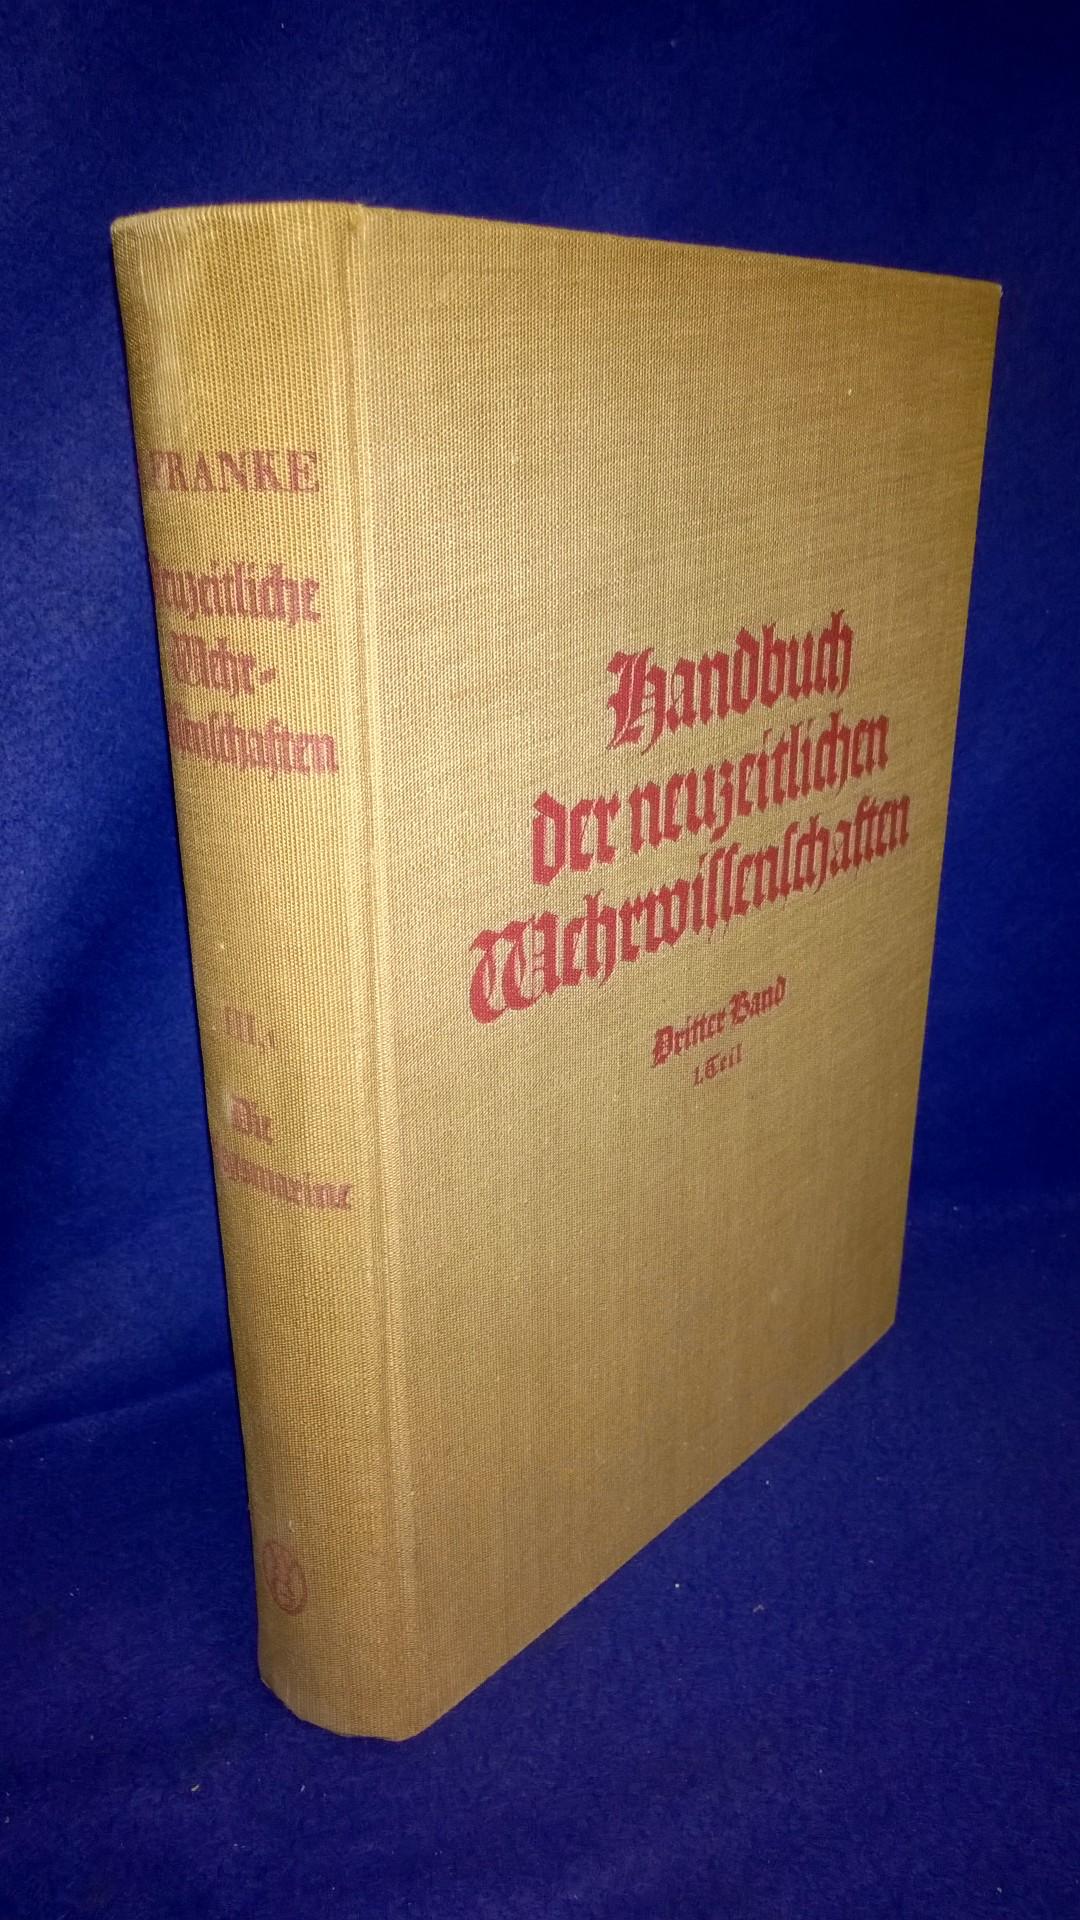 Handbuch der neuzeitlichen Wehrwissenschaften - Dritter Band : Die Kriegsmarine